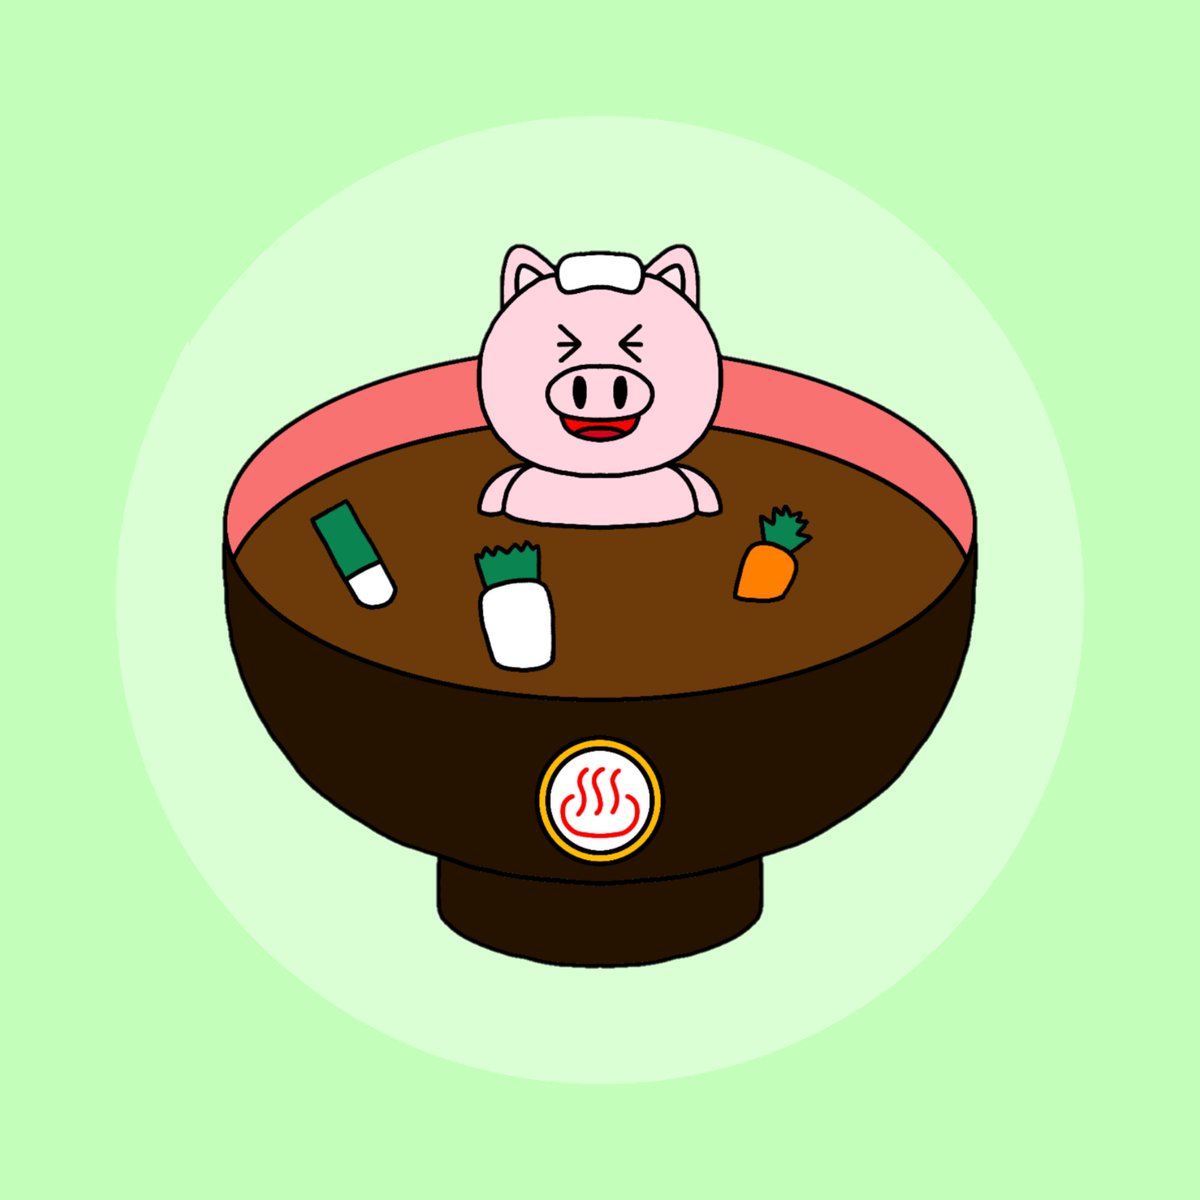 Haya ｸﾞｯｽﾞ Lineｽﾀﾝﾌﾟ販売中 豚カツと豚汁 豚カツ 豚汁 イラスト Hayaのイラスト